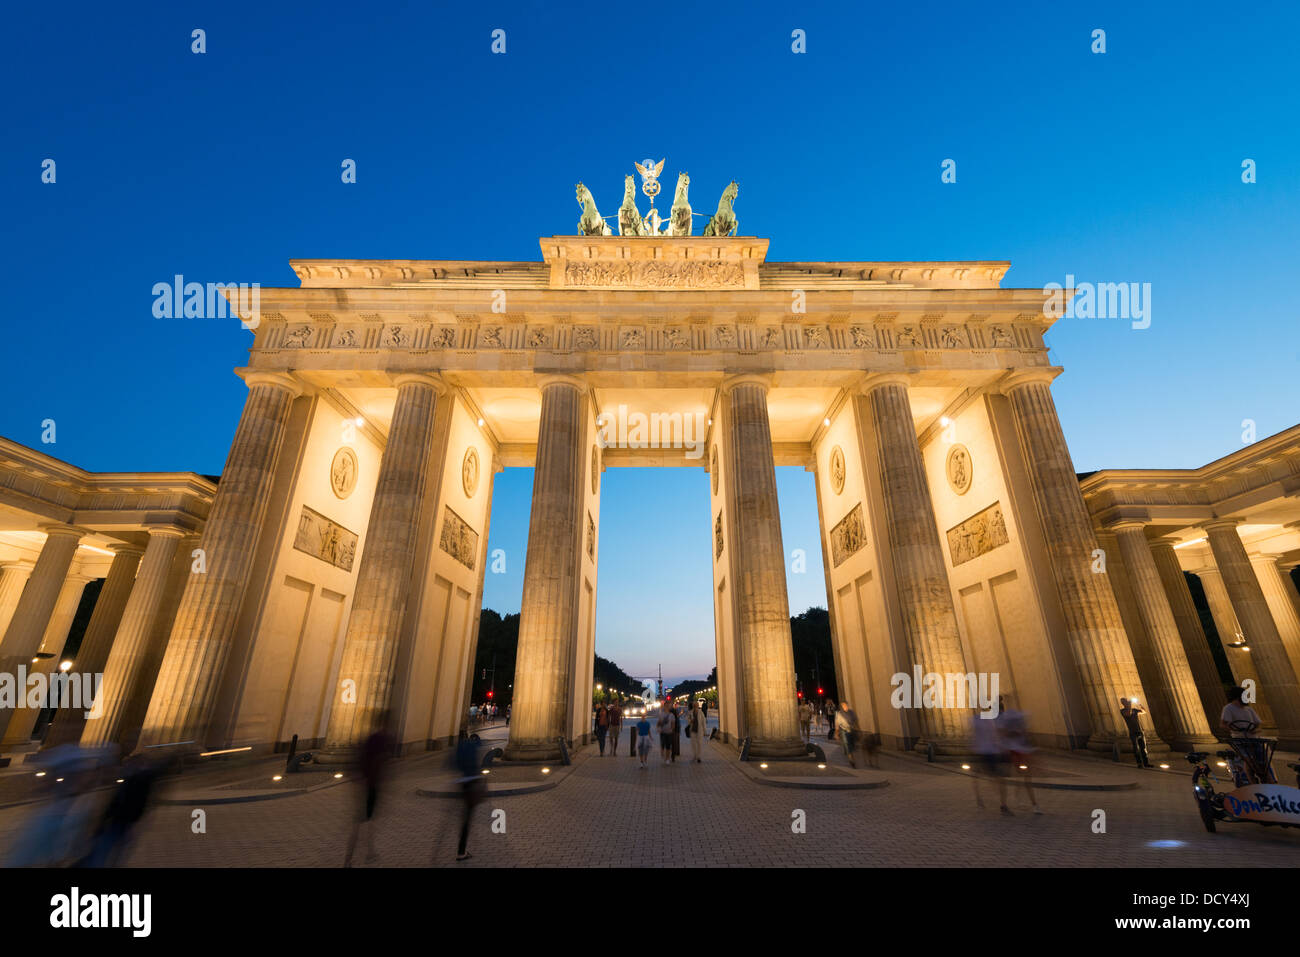 Vue de nuit sur la porte de Brandebourg à Berlin Allemagne Banque D'Images